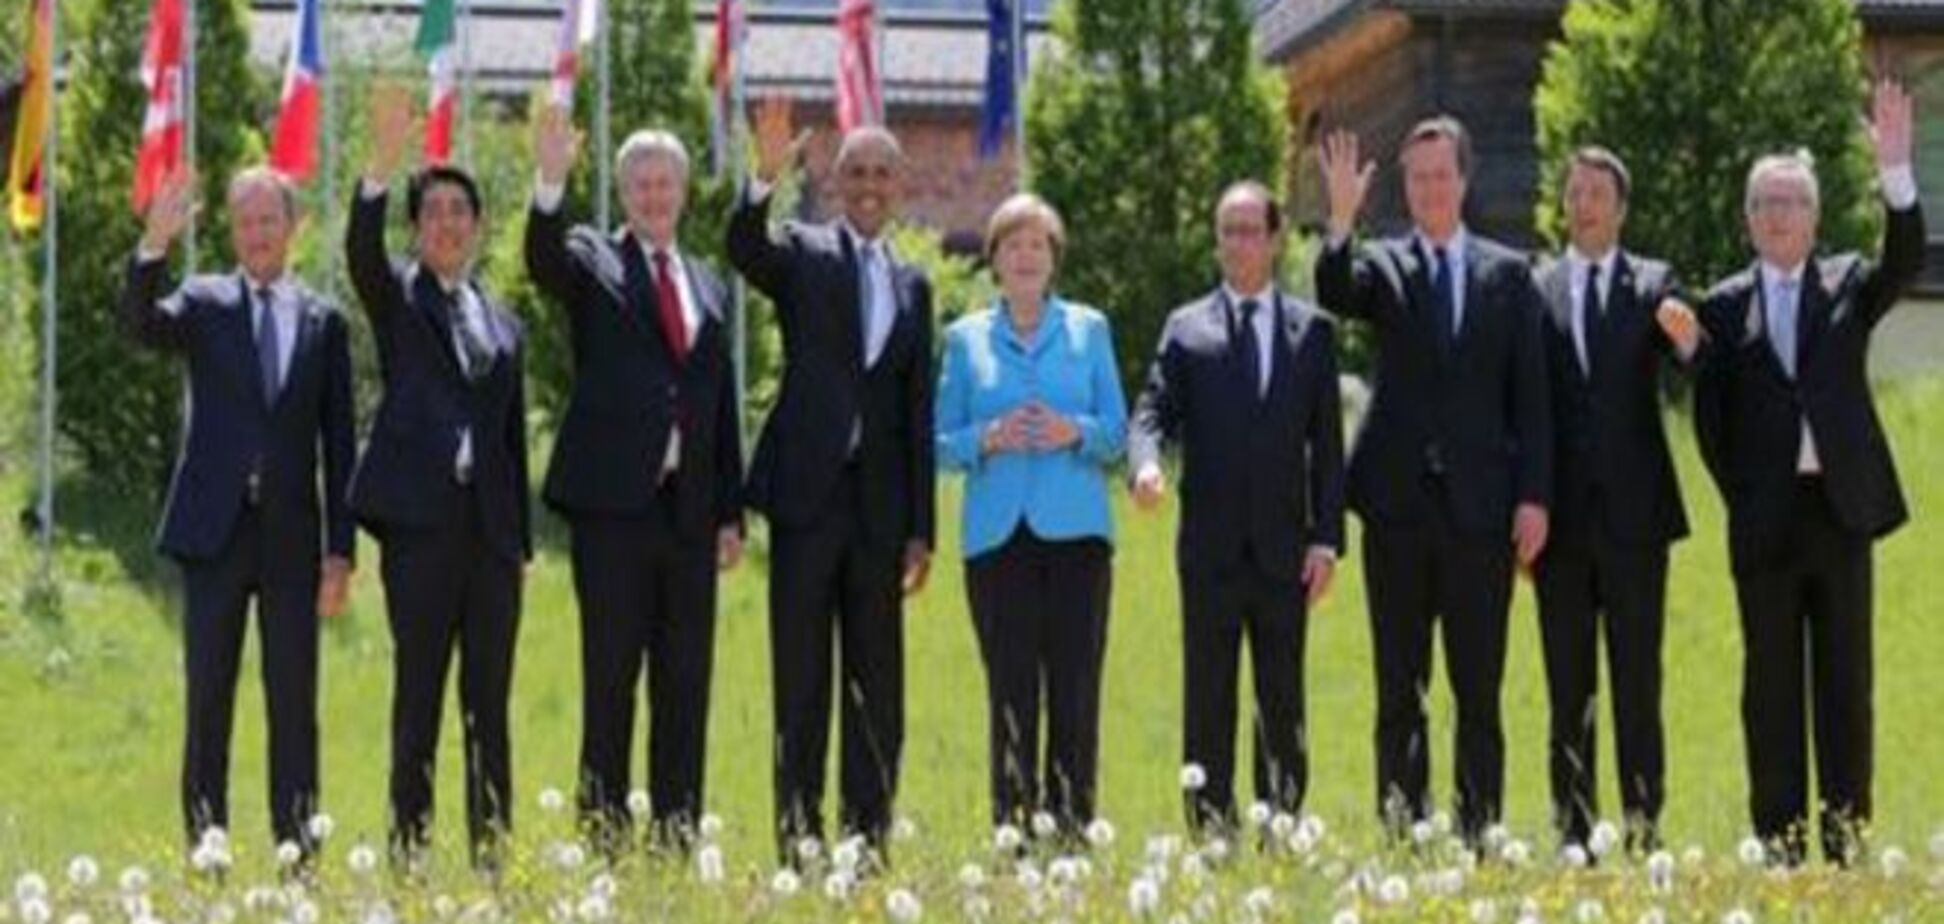 G7: климат, женщины и антибиотики. А Украина?